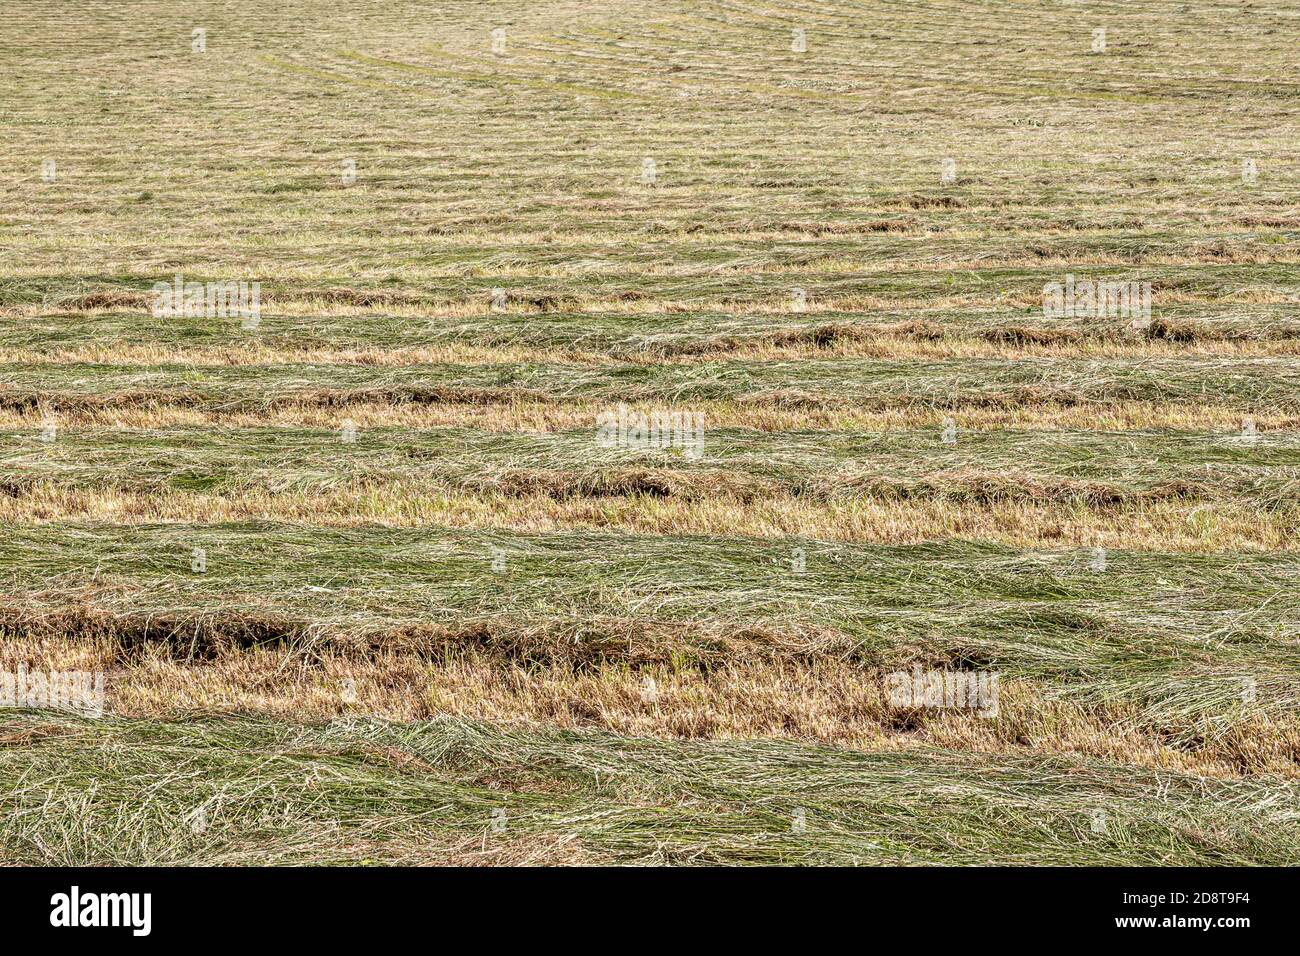 Landwirtschaftliche Feld von frisch geschnittenen Roggen, Ernte für Silage verwendet, Streifen von frisch geschnittenen grünen Gras, sonnigen Sommertag in Süd-Limburg, Niederlande Stockfoto